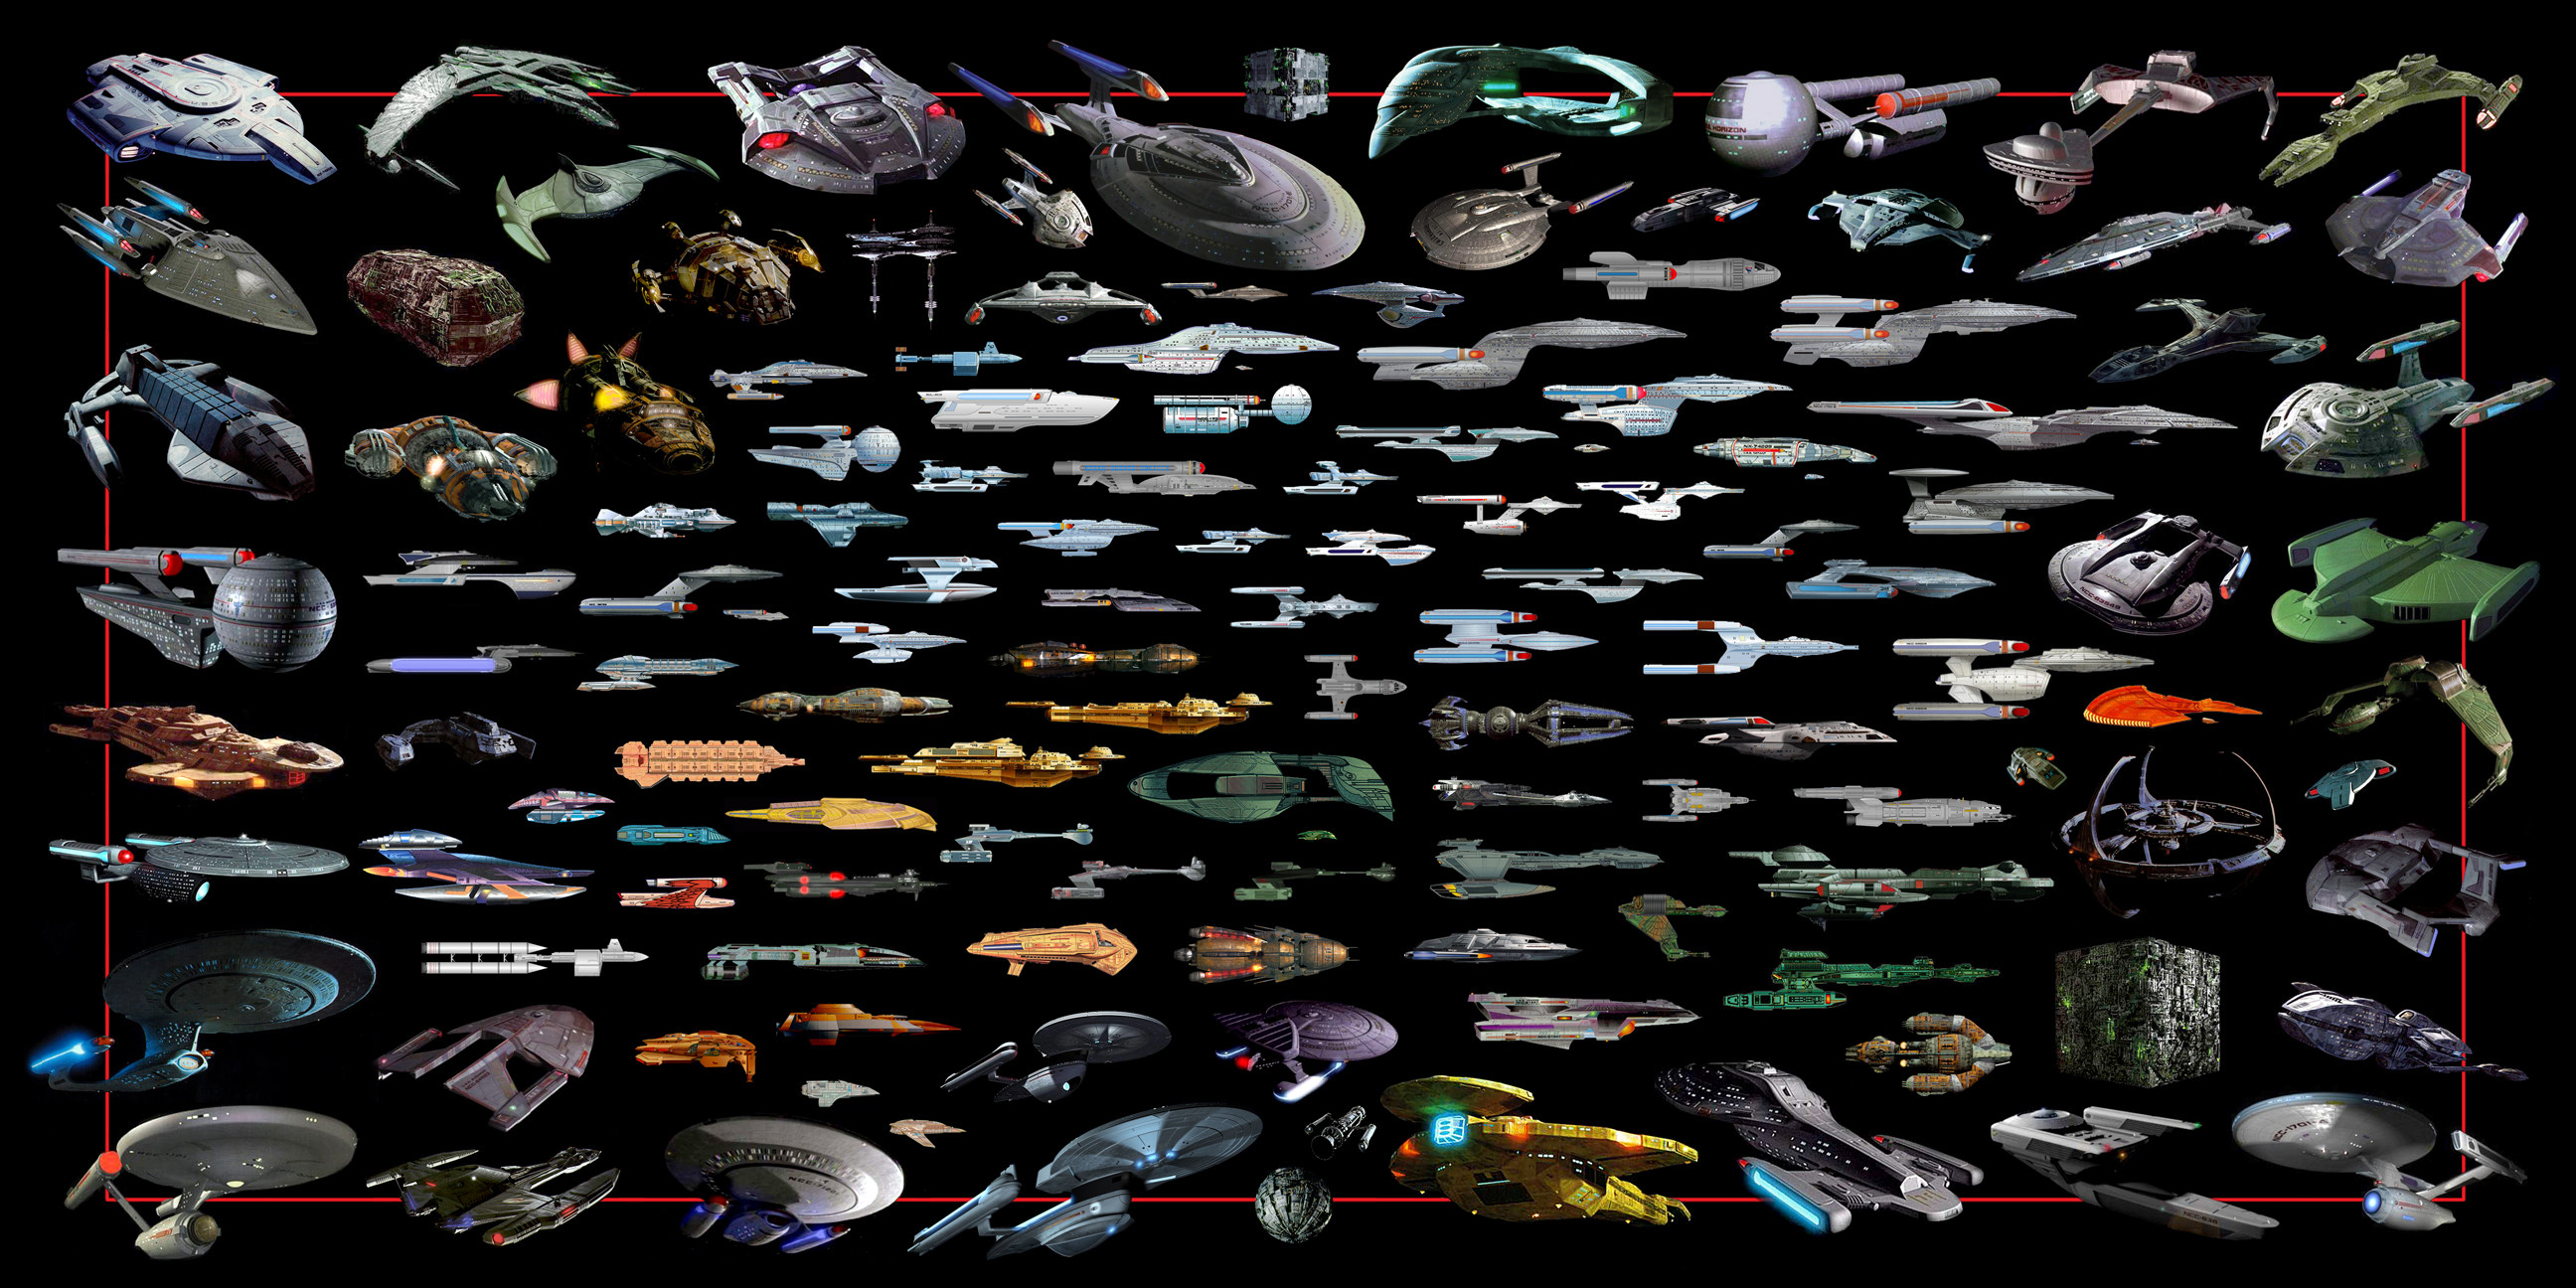 2592x1296 Hintergrundbilder Star Trek Tapete Festival Nackt Poster Star Trek Tapete  Startrek Wallpaper Geek Space Borg Ships Warp Spock Ferengi Klingon  Sncefiction ...